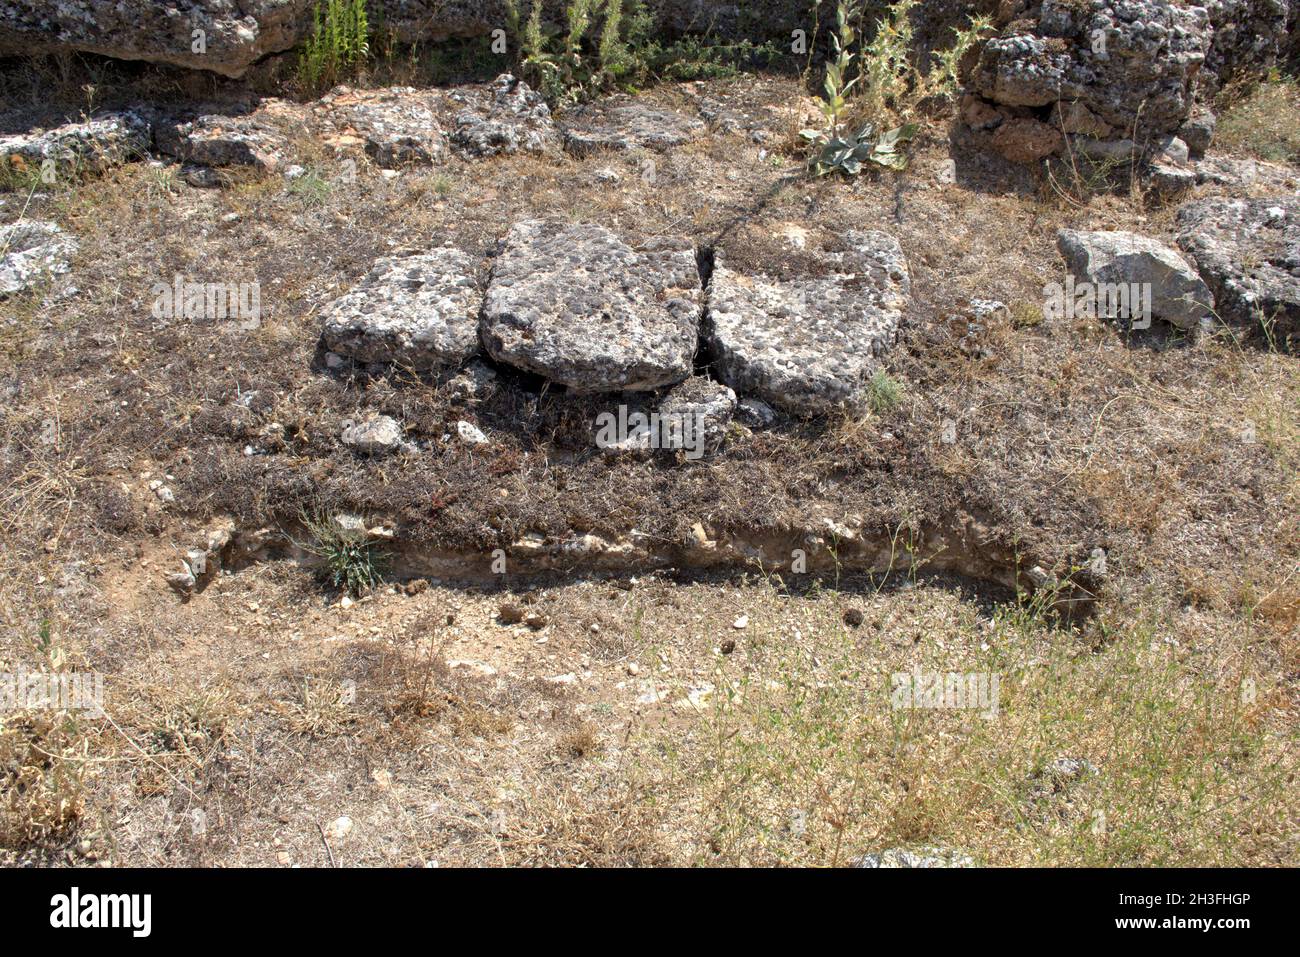 Tombe antropomorfe scavate in terreno roccioso, orientate da est ad ovest. Risalente al 10 ° secolo, situato nella necropoli medievale. Foto Stock